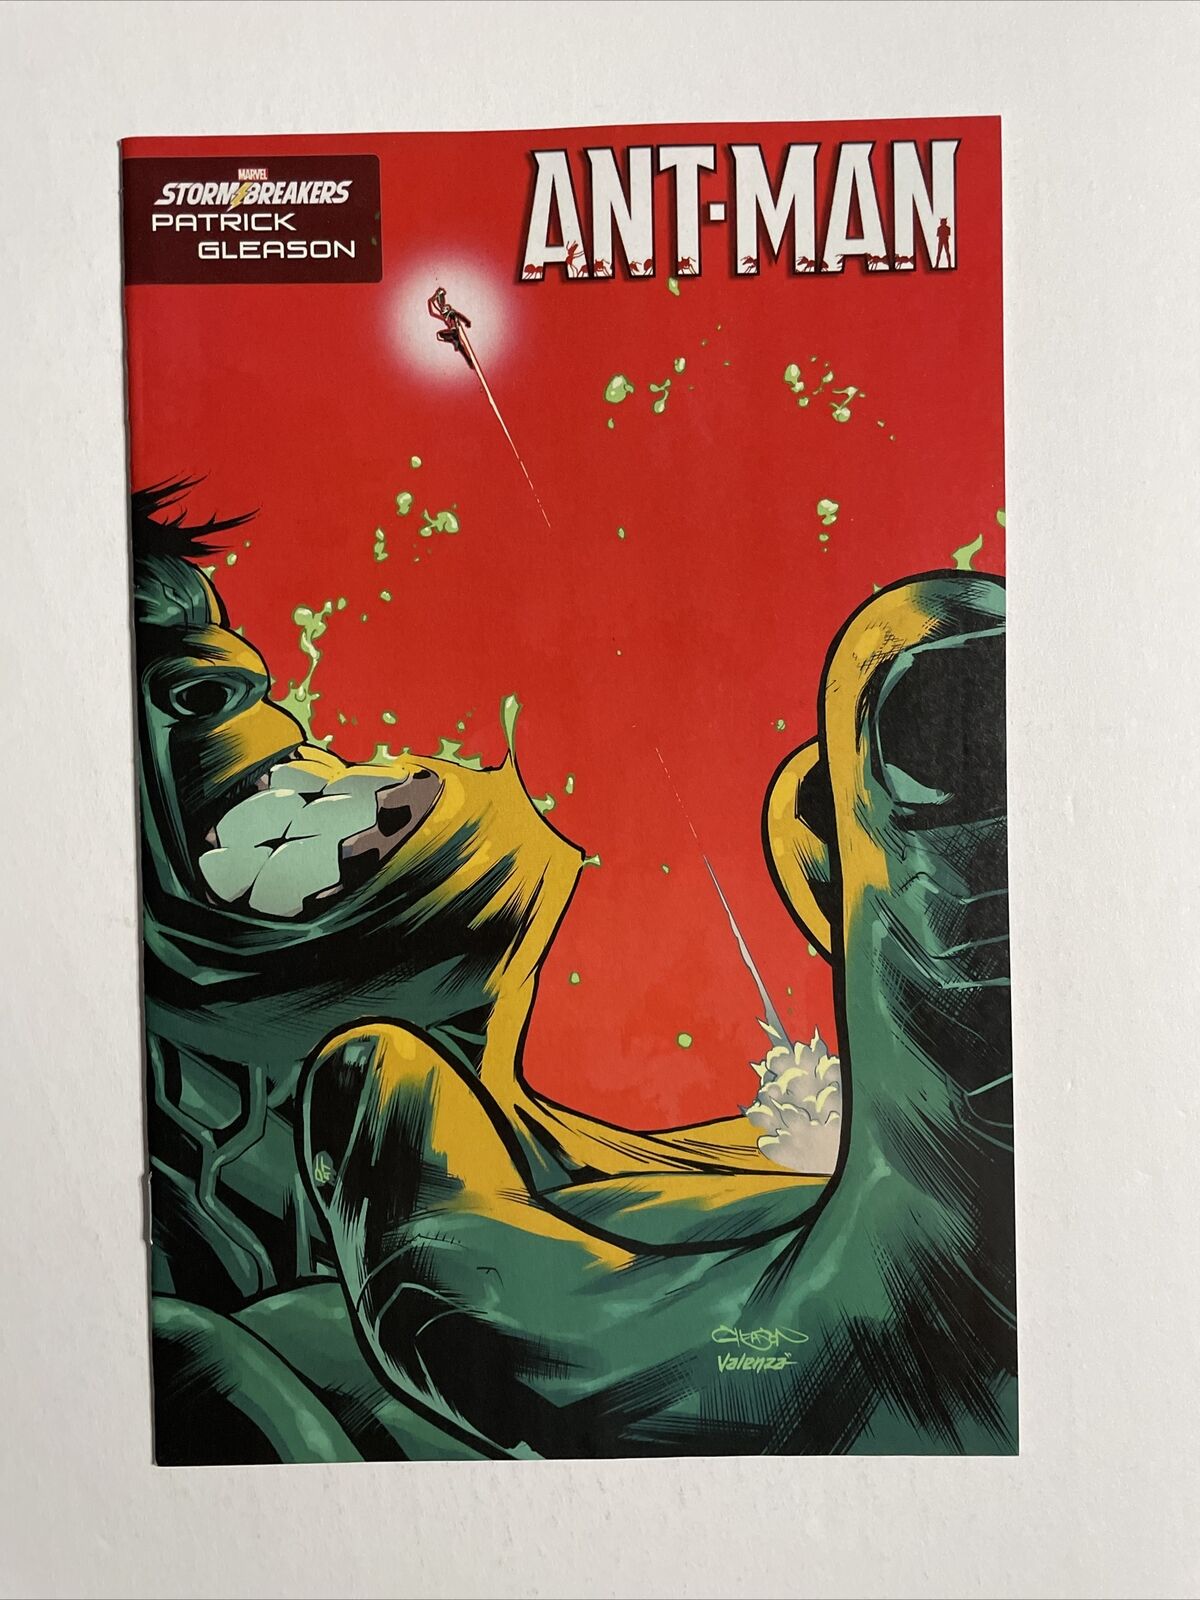 Ant-Man #1 (2022) 9.4 NM Marvel High Grade Gleason Stormbreaker Variant Cover